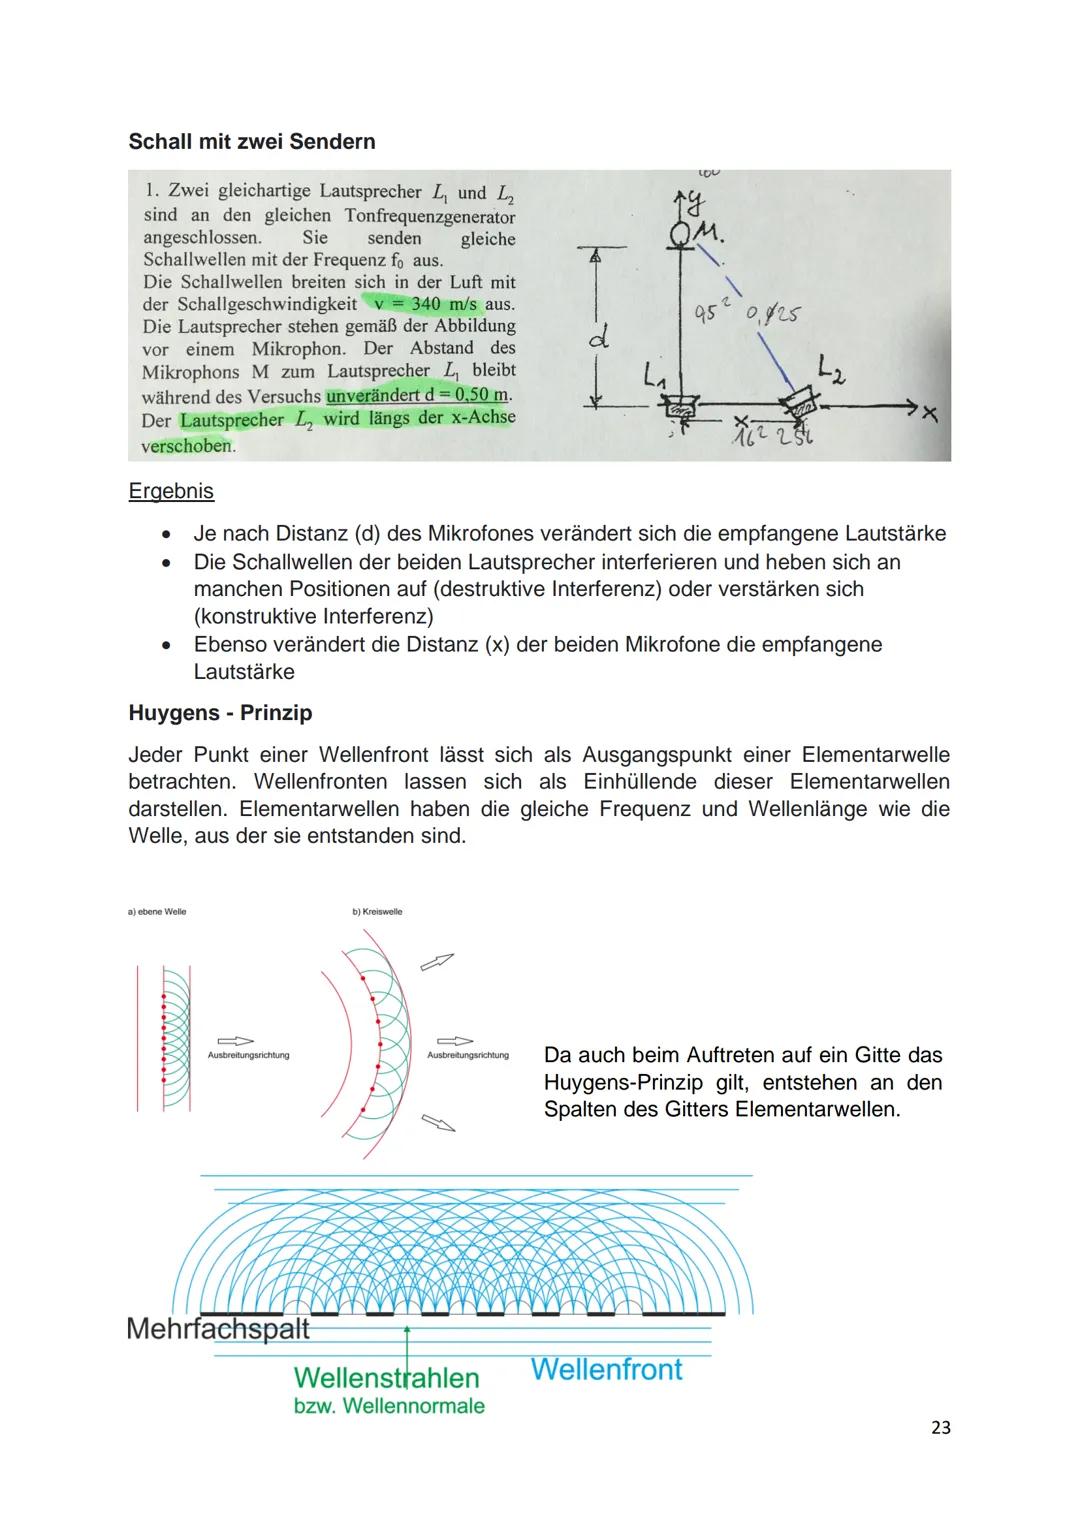 ABI-PHYSIK
Leon Schwarz Inhaltsverzeichnis
Elektrizität.
Elektrizitätslehre
Die Elektronenkanonen und Braunsche Röhre...
Elektrische Ladung 